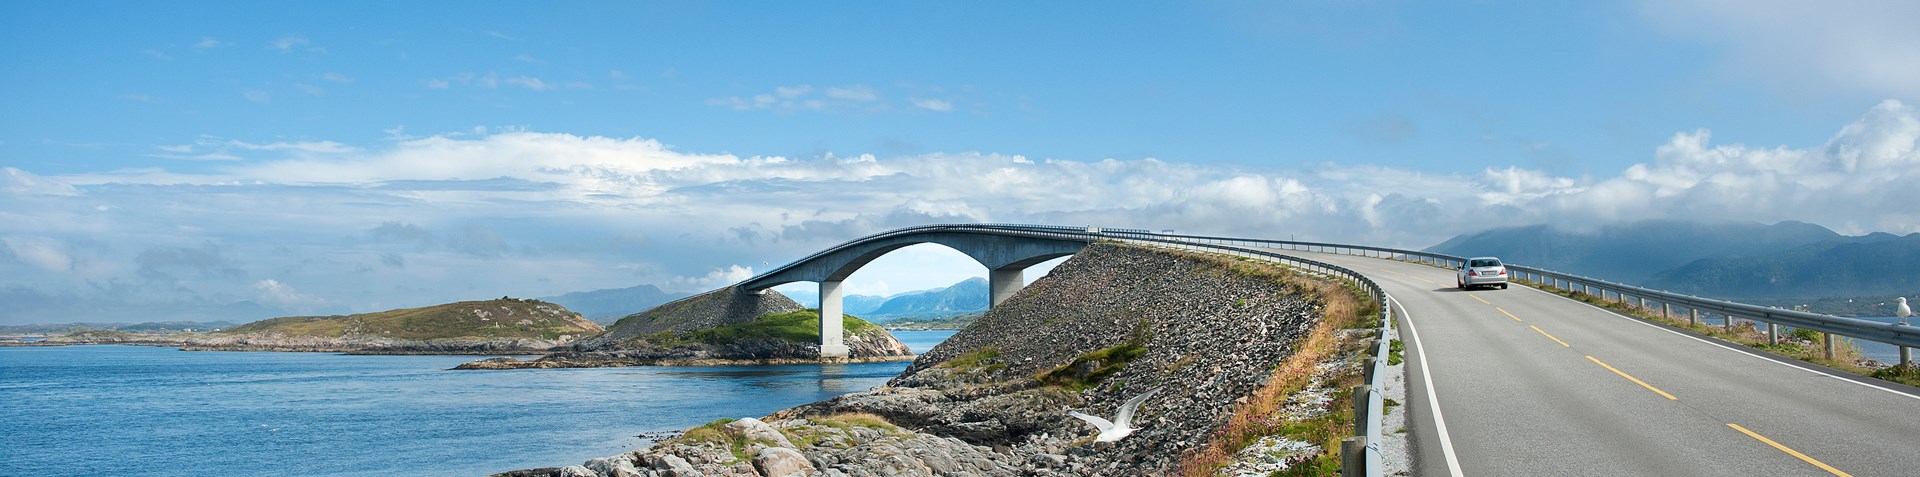 Bilete frå Nasjonal turistveg Hardanger. Foto: Frid-Jorunn Stabell